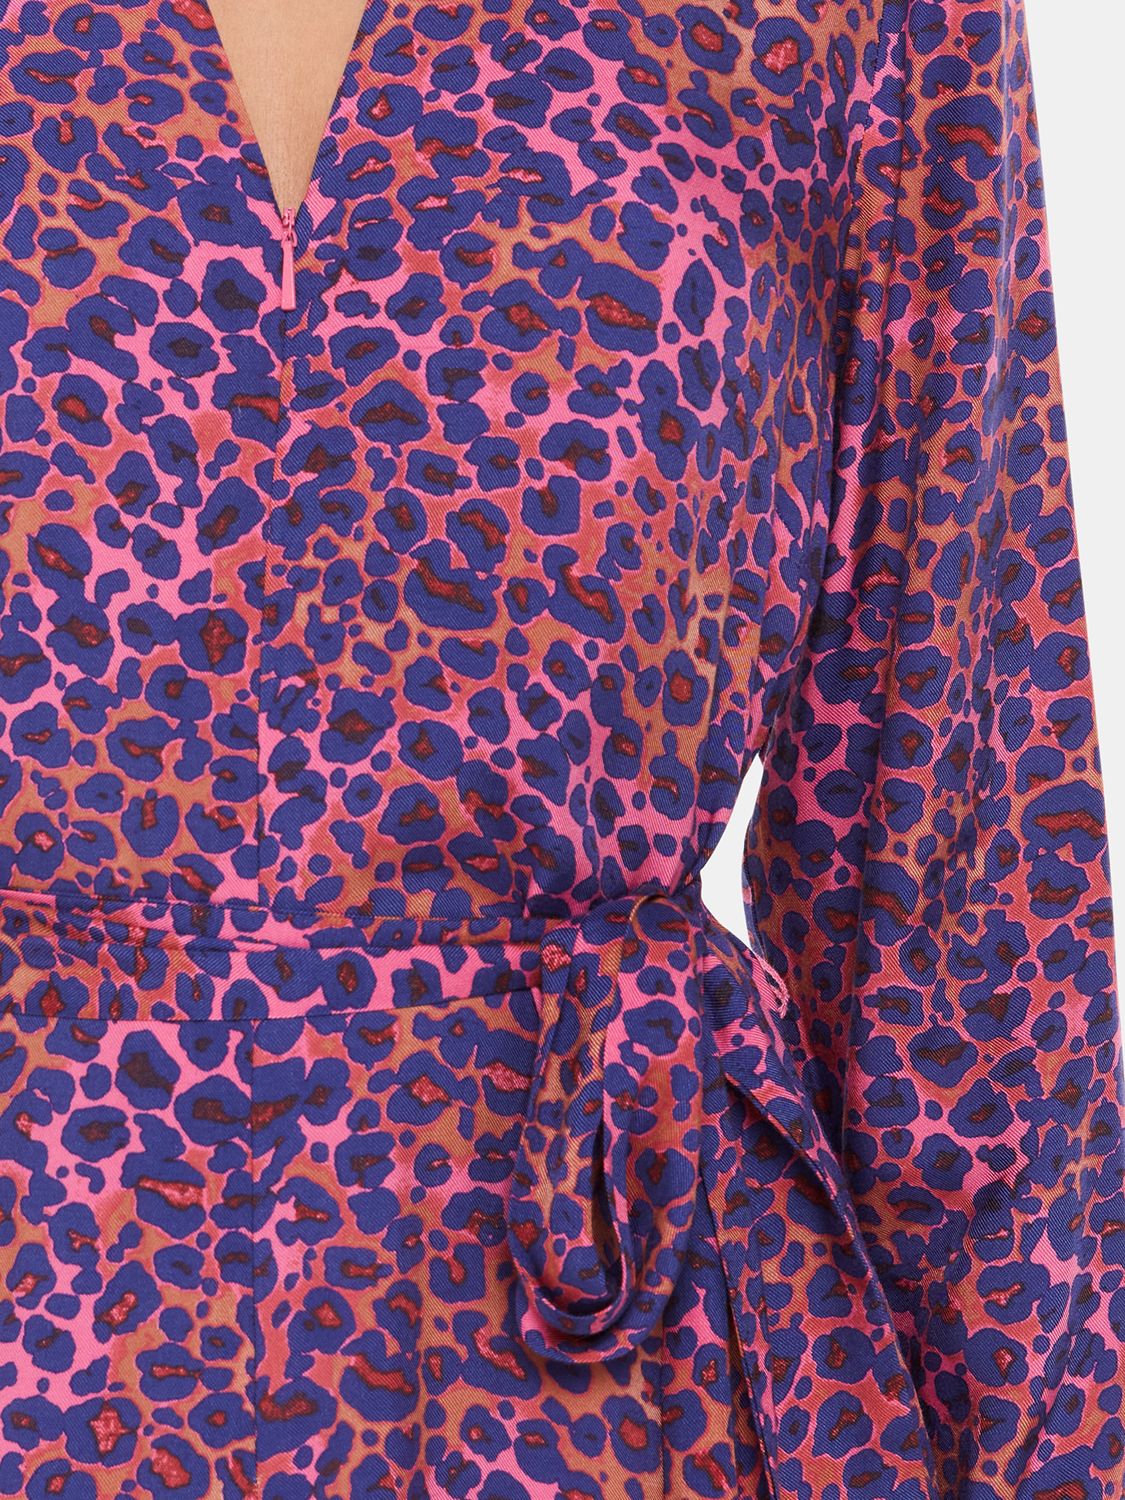 Whistles Mottled Leopard Midi Dress, Pink/Multi, 10